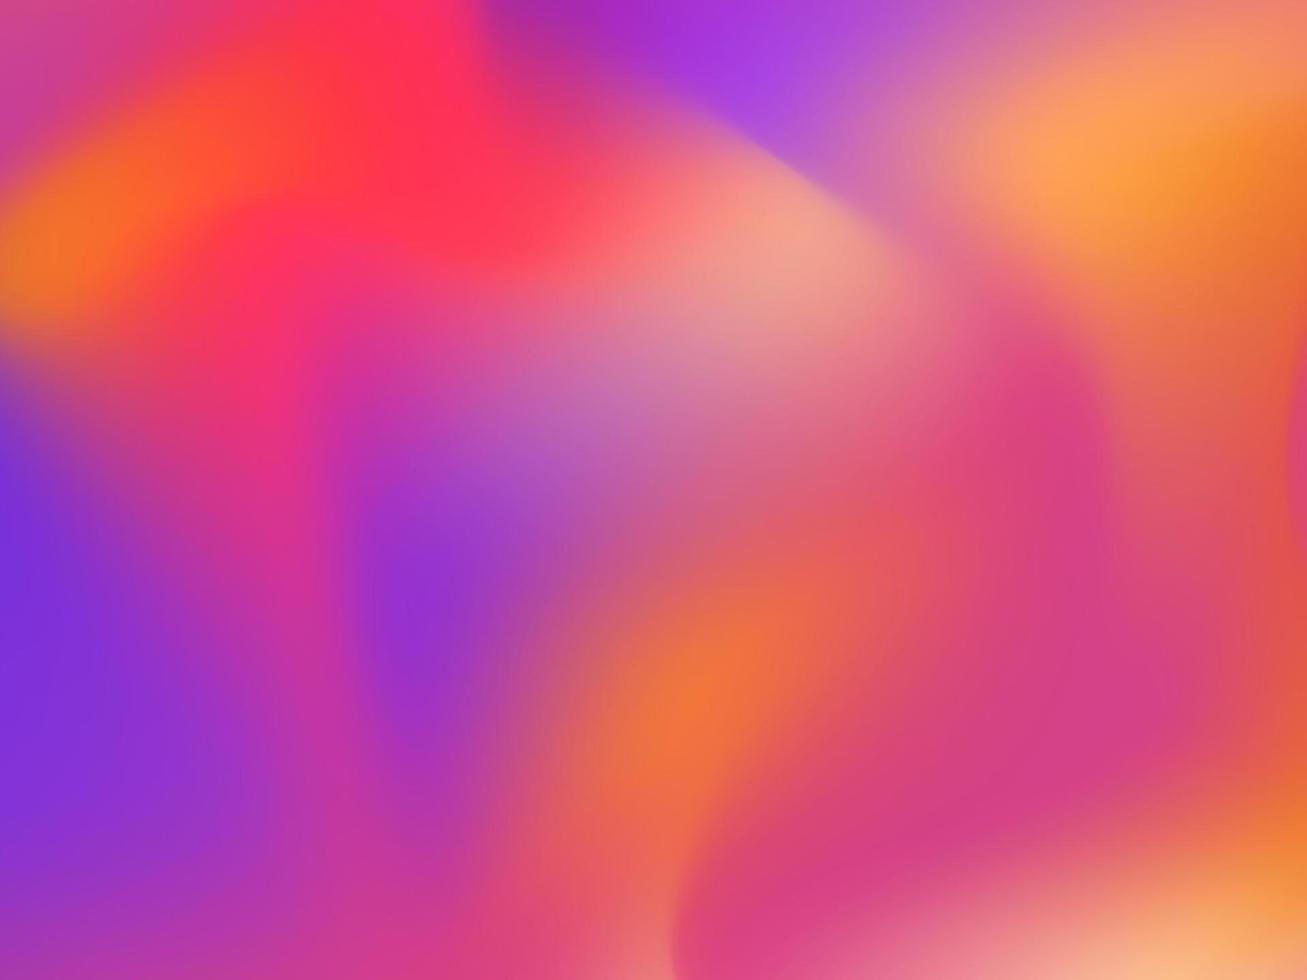 abstrakter Farbwellenhintergrund. bunt von orange, rosa, lila, gelbem Hintergrund. Vektor-Illustration vektor